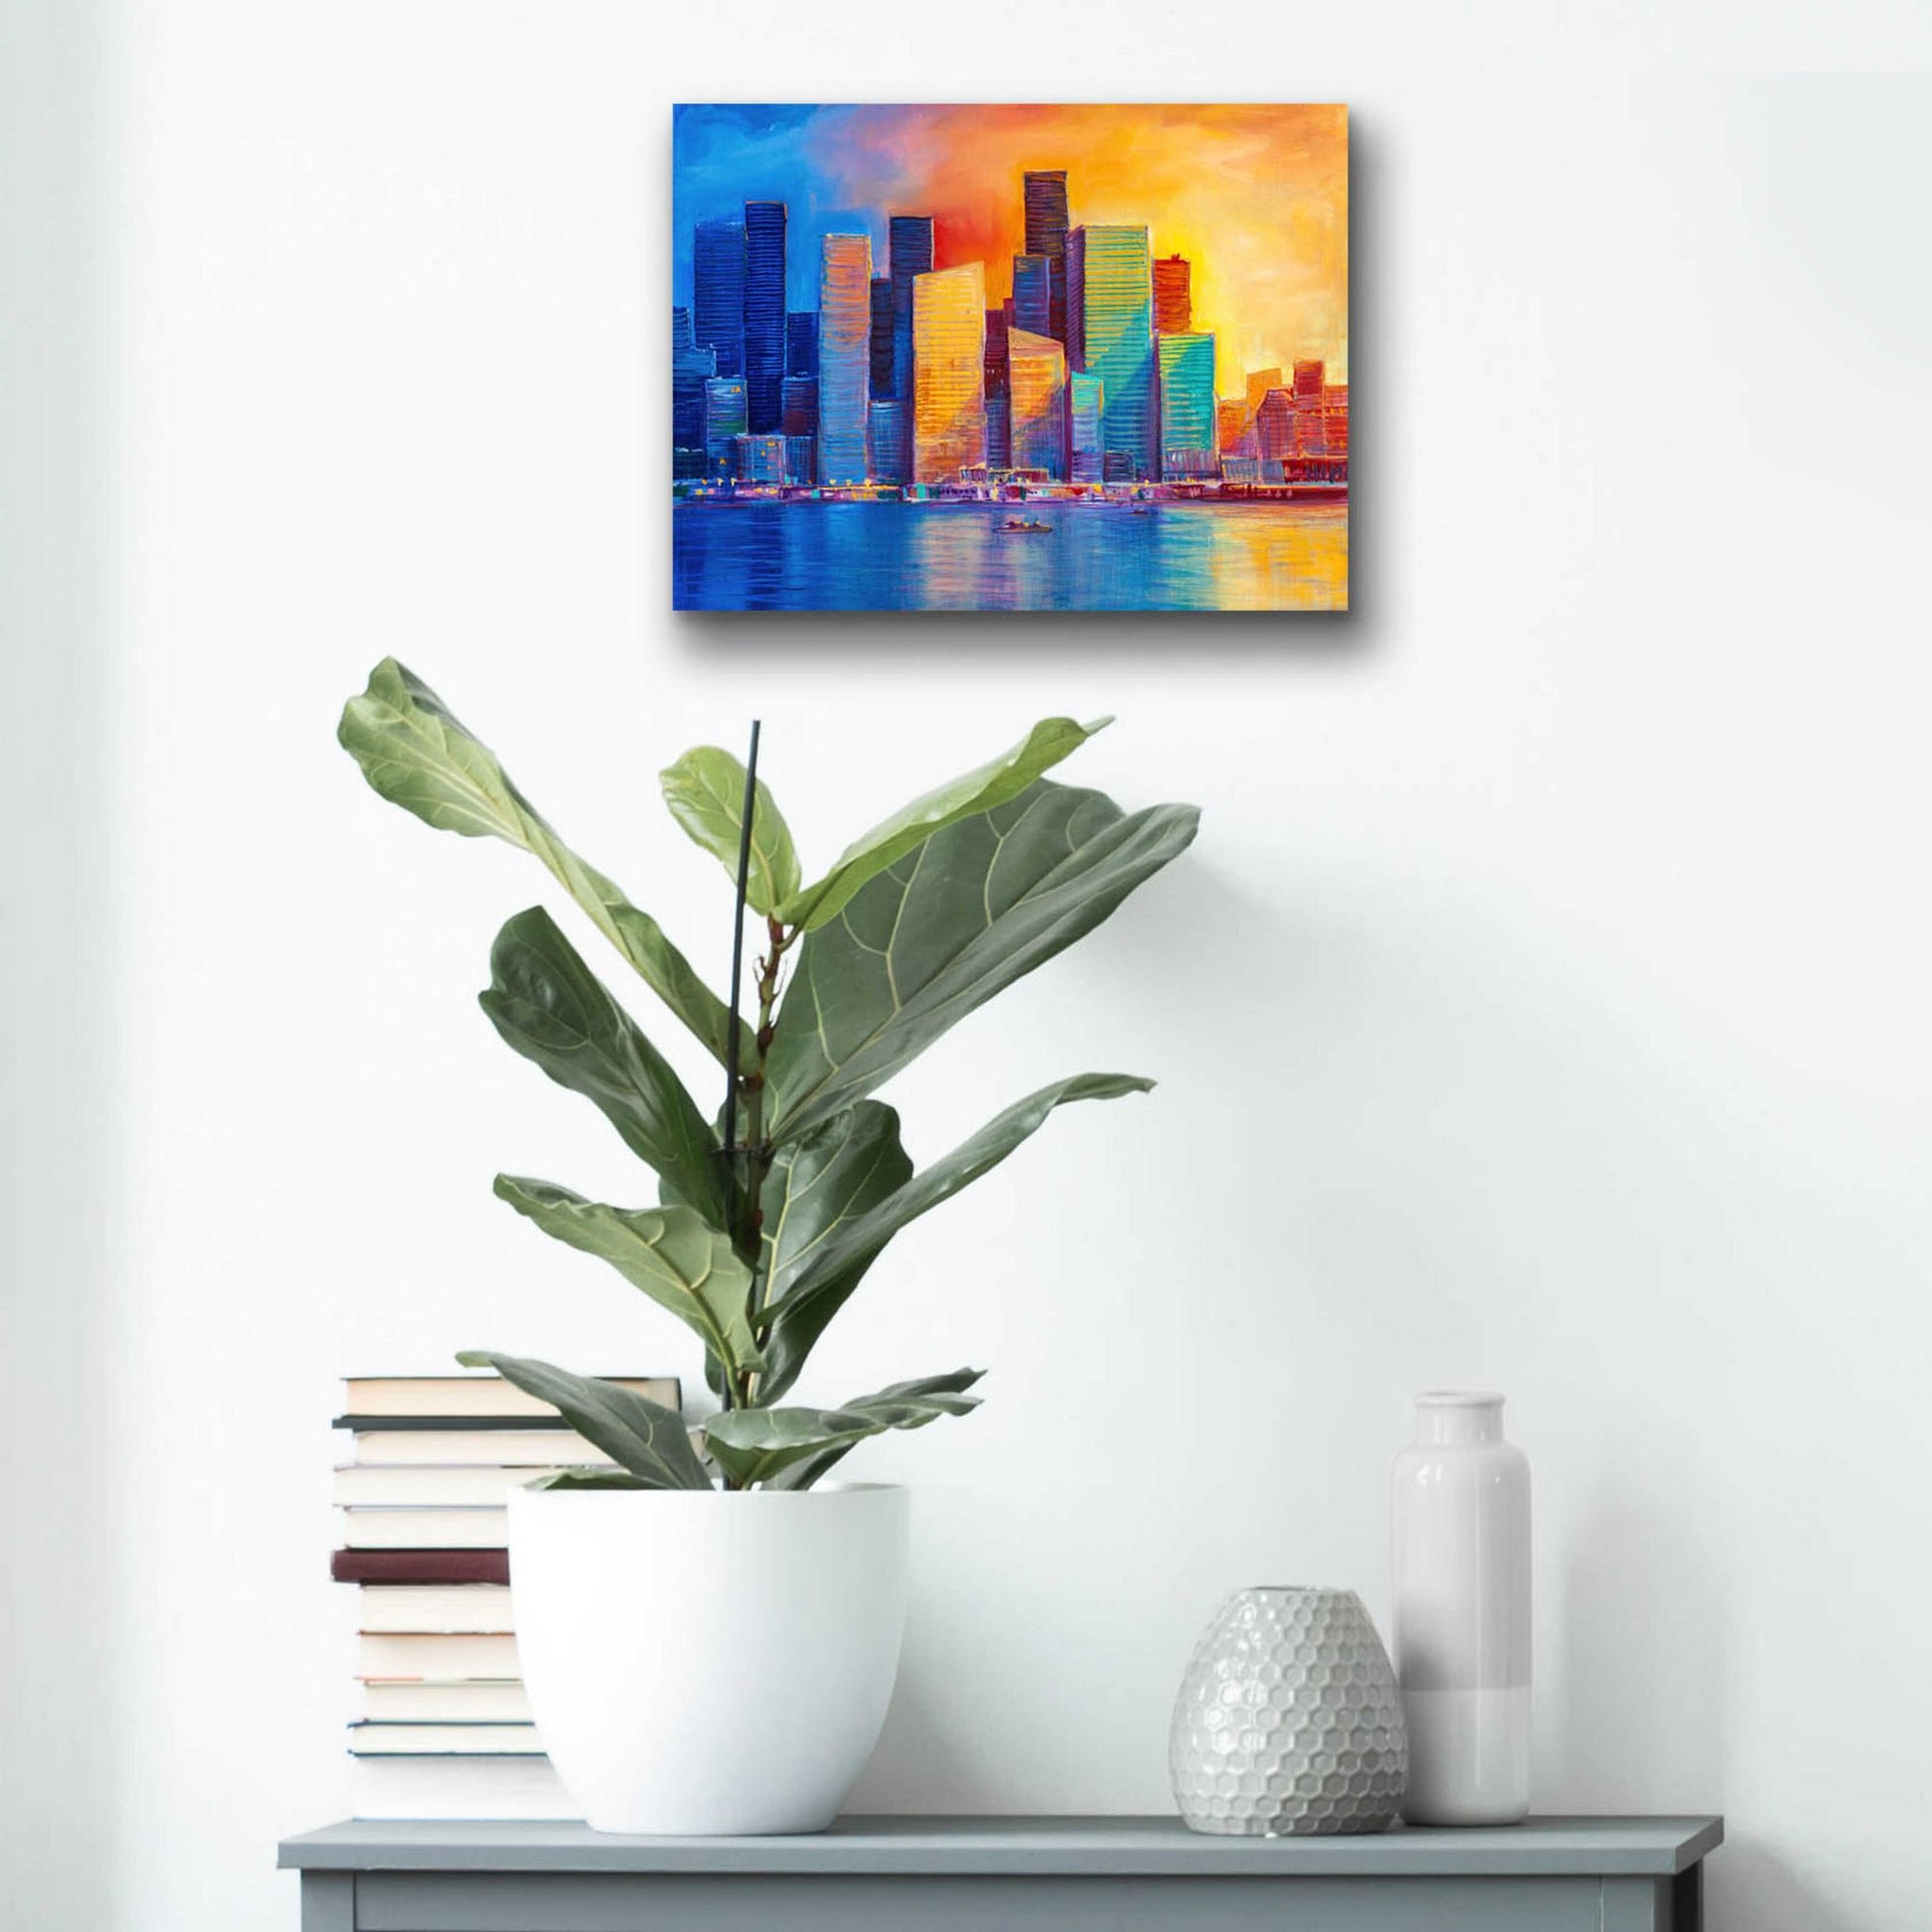 Epic Art 'Colorful Skyline' by Epic Portfolio, Acrylic Glass Wall Art,16x12